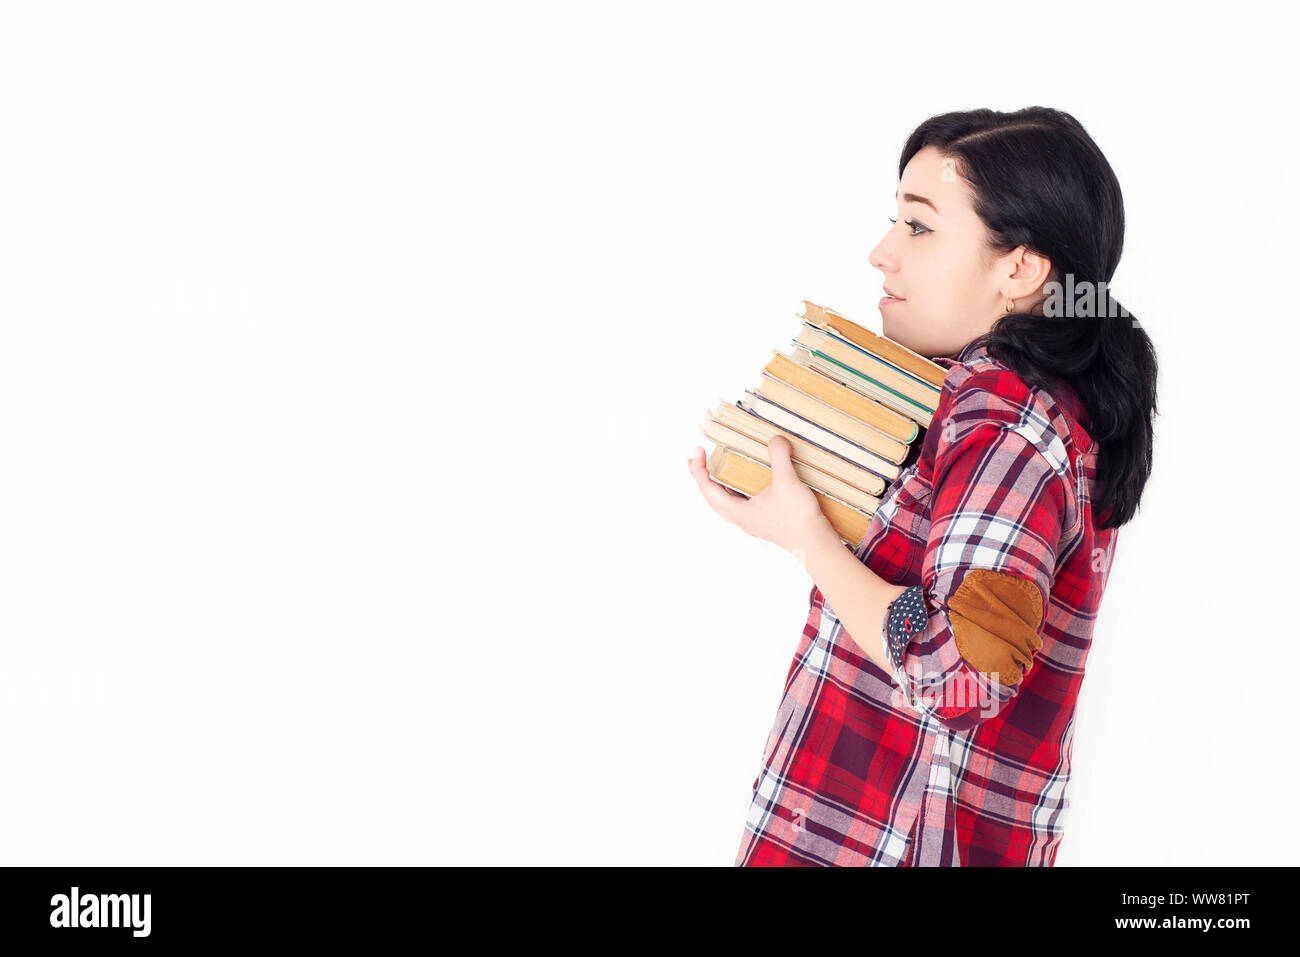 Une jeune fille élève dans une chemise à carreaux rouge tenant une pile lourde de livres anciens ou de manuels. Préparation à l'admission à l'université, à une session ou à des examens. Banque D'Images